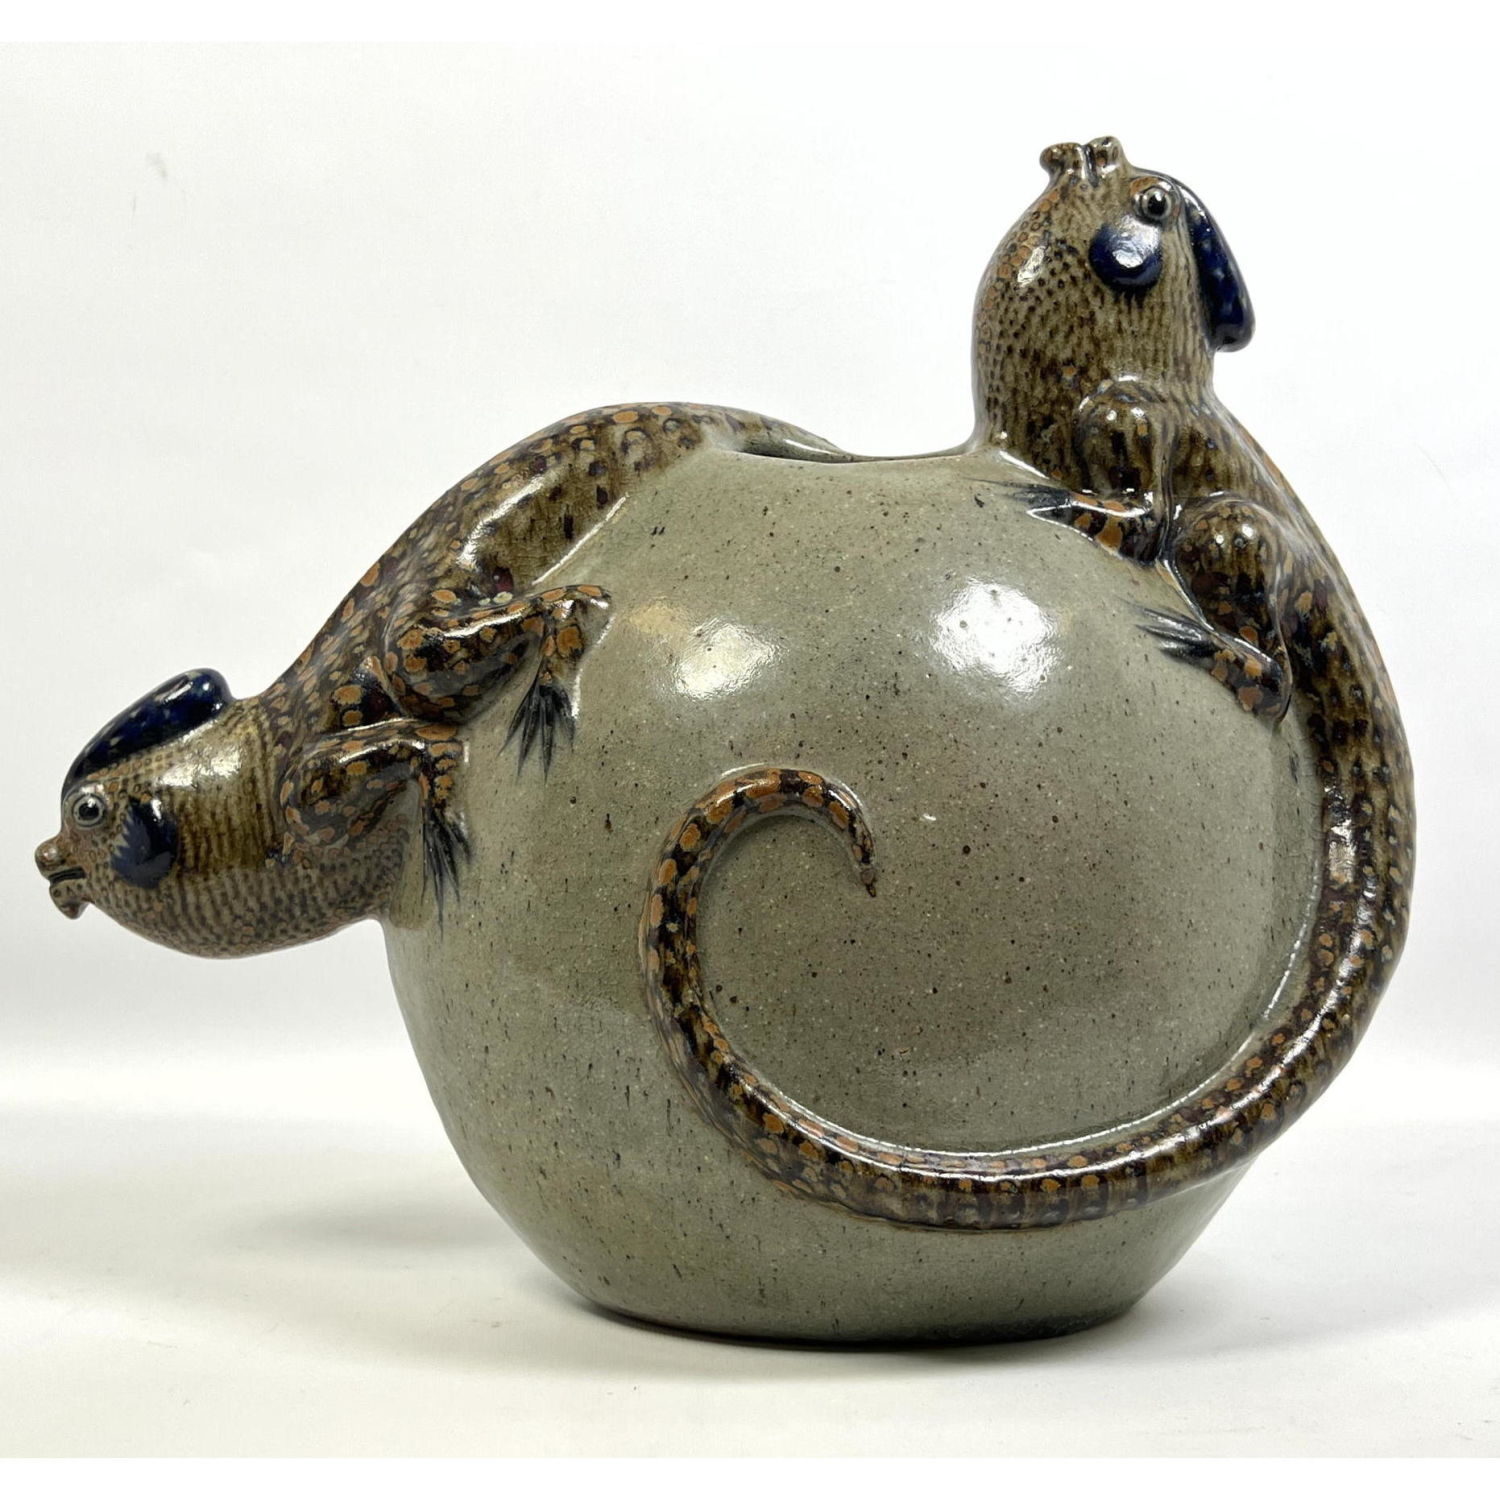 Pottery Vase with iguana decoration 2ba7c8